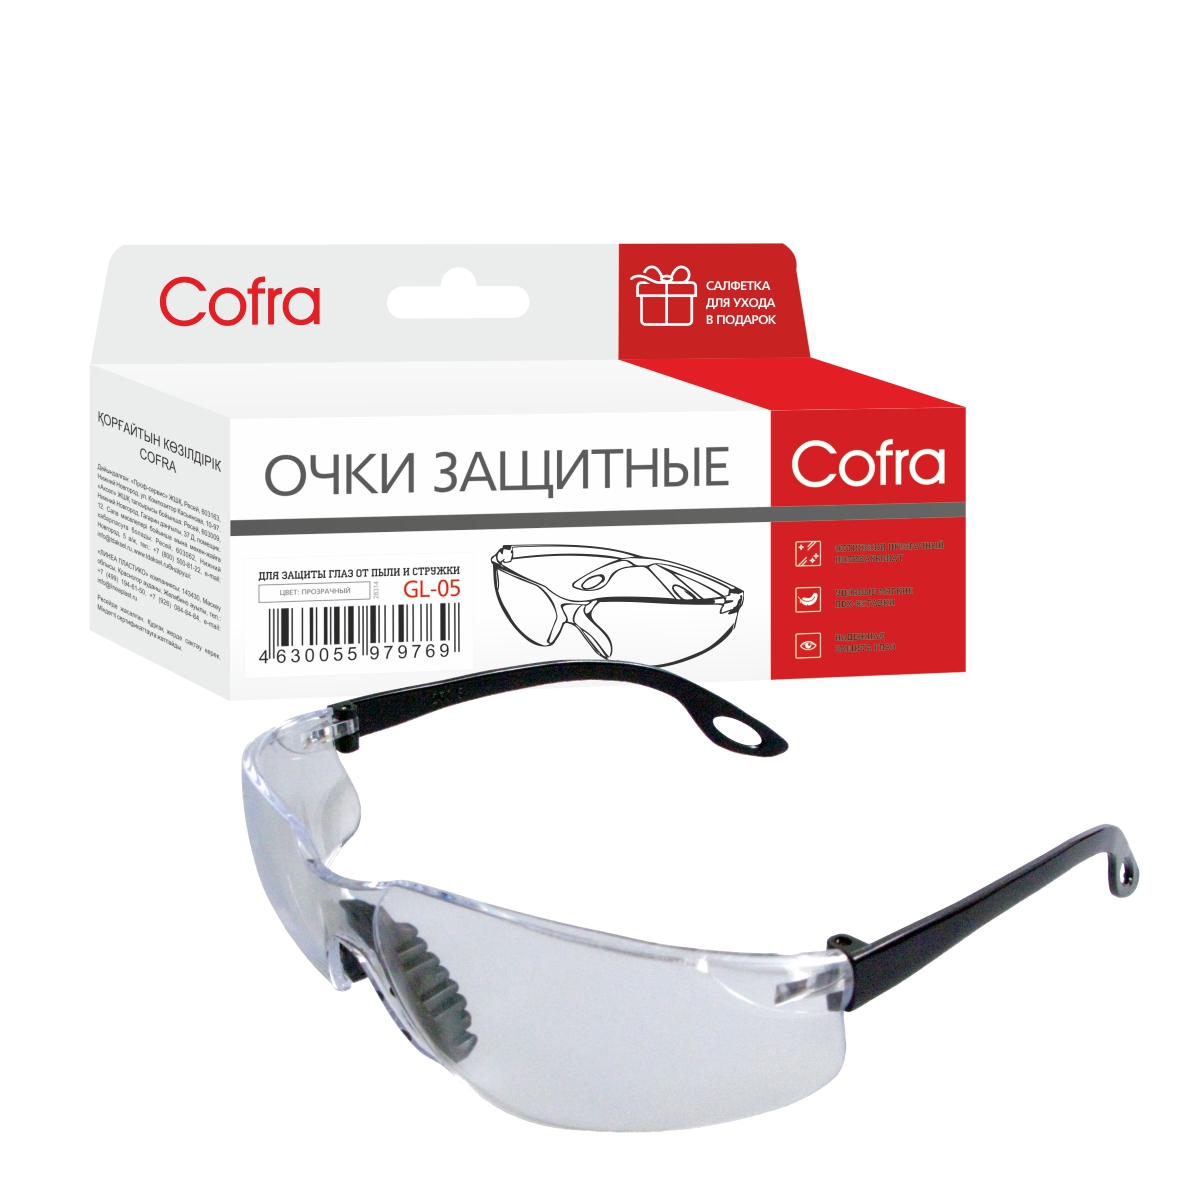 фото Gl-05 очки защитные cofra, прозрачные